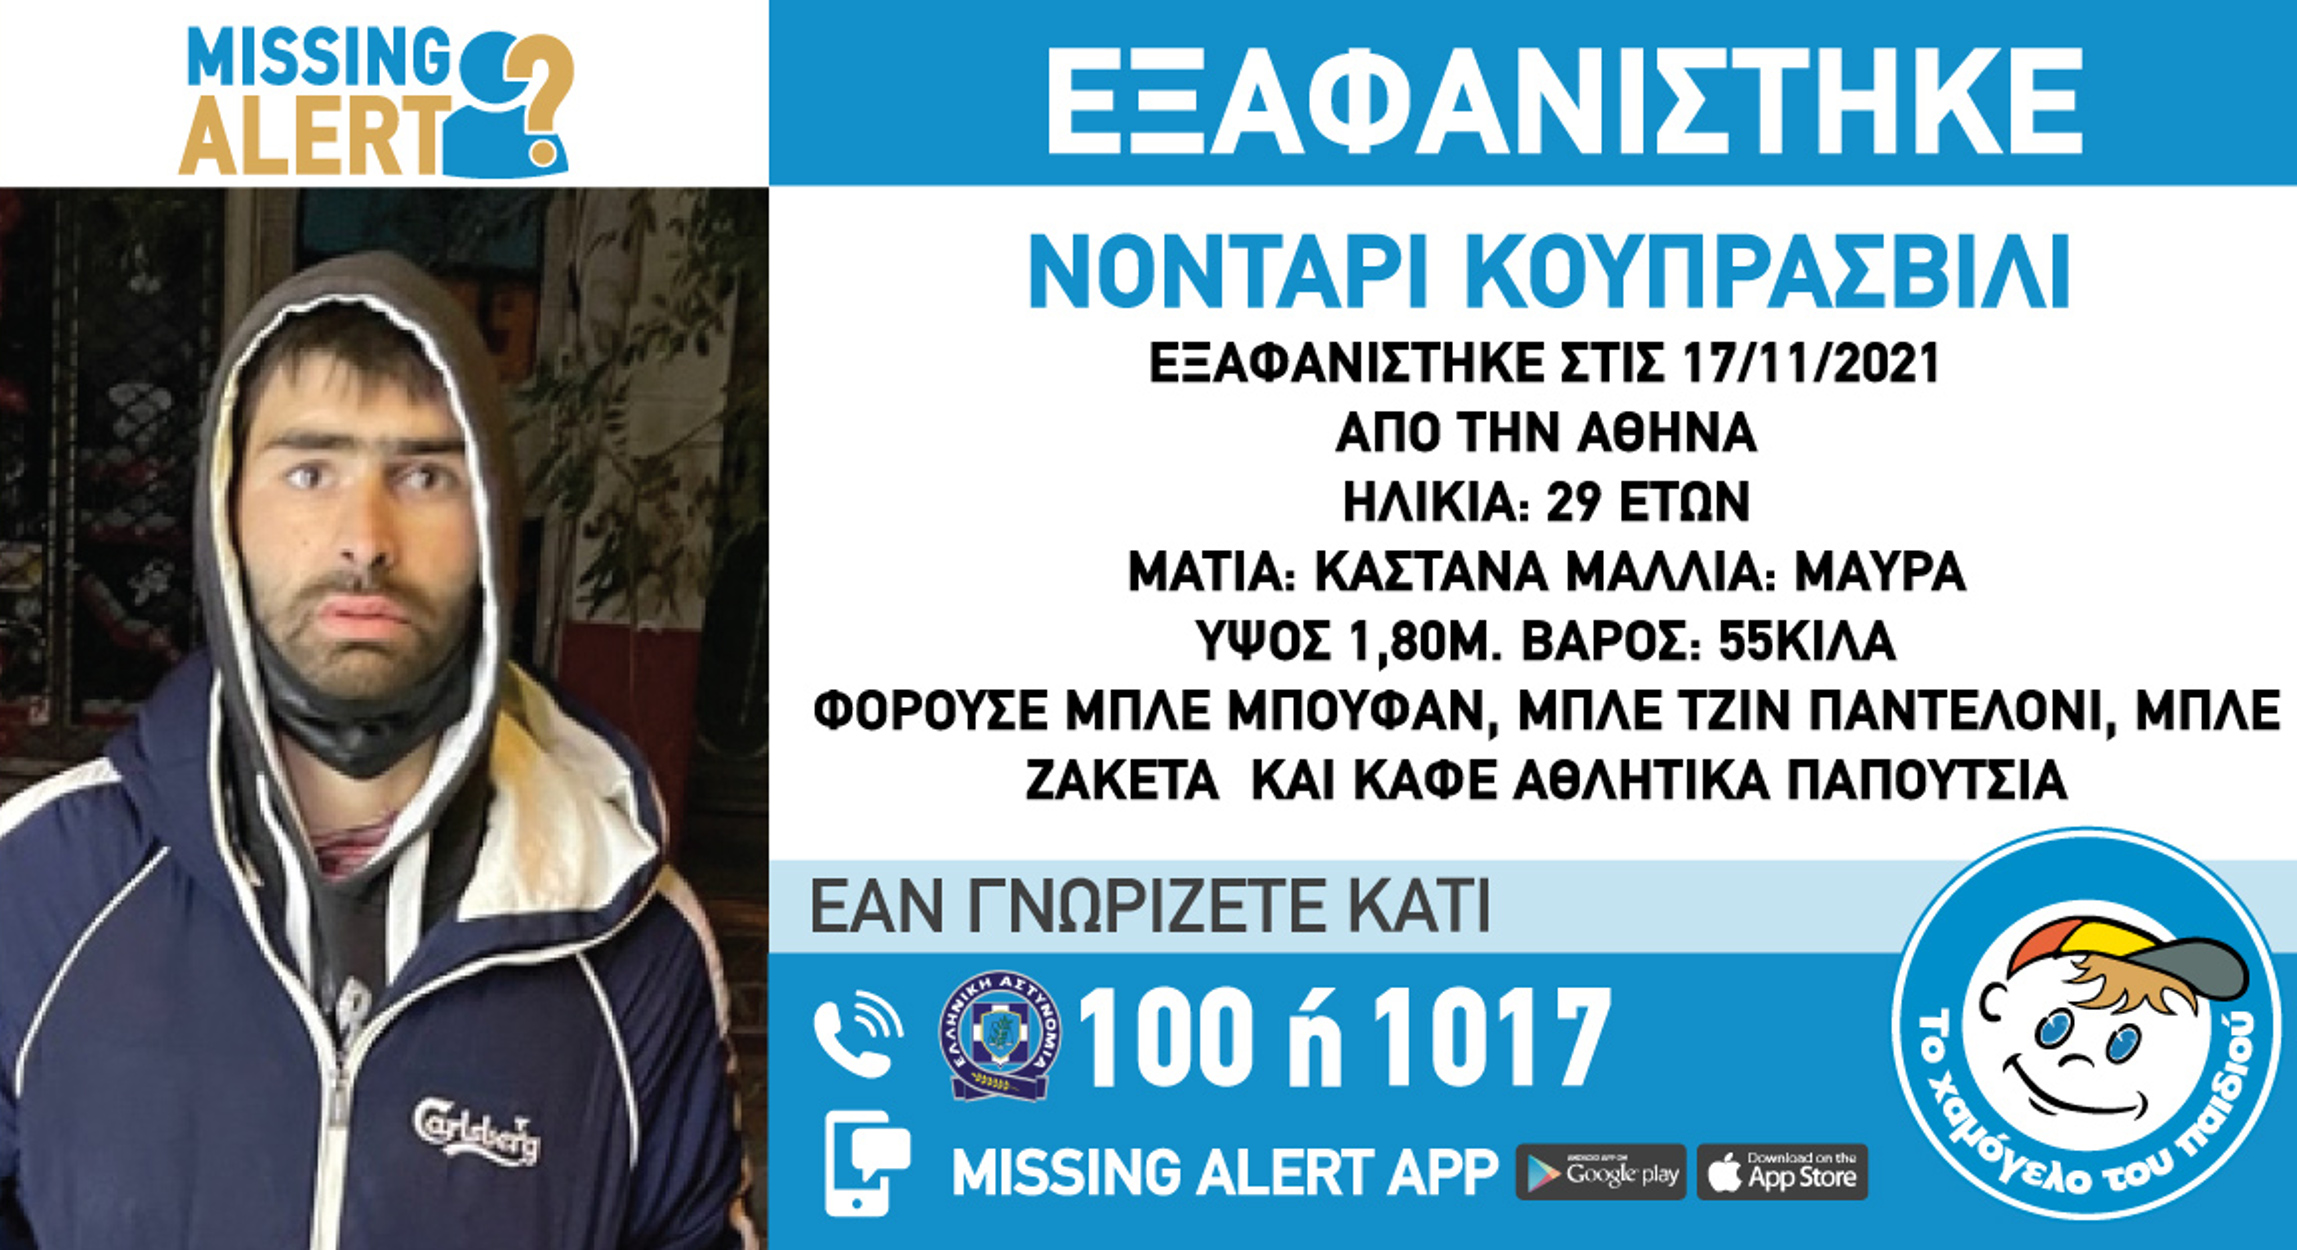 Missing Alert: Συναγερμός για την εξαφάνιση 29χρονου στην Αθήνα από τις 17 Νοέμβρη